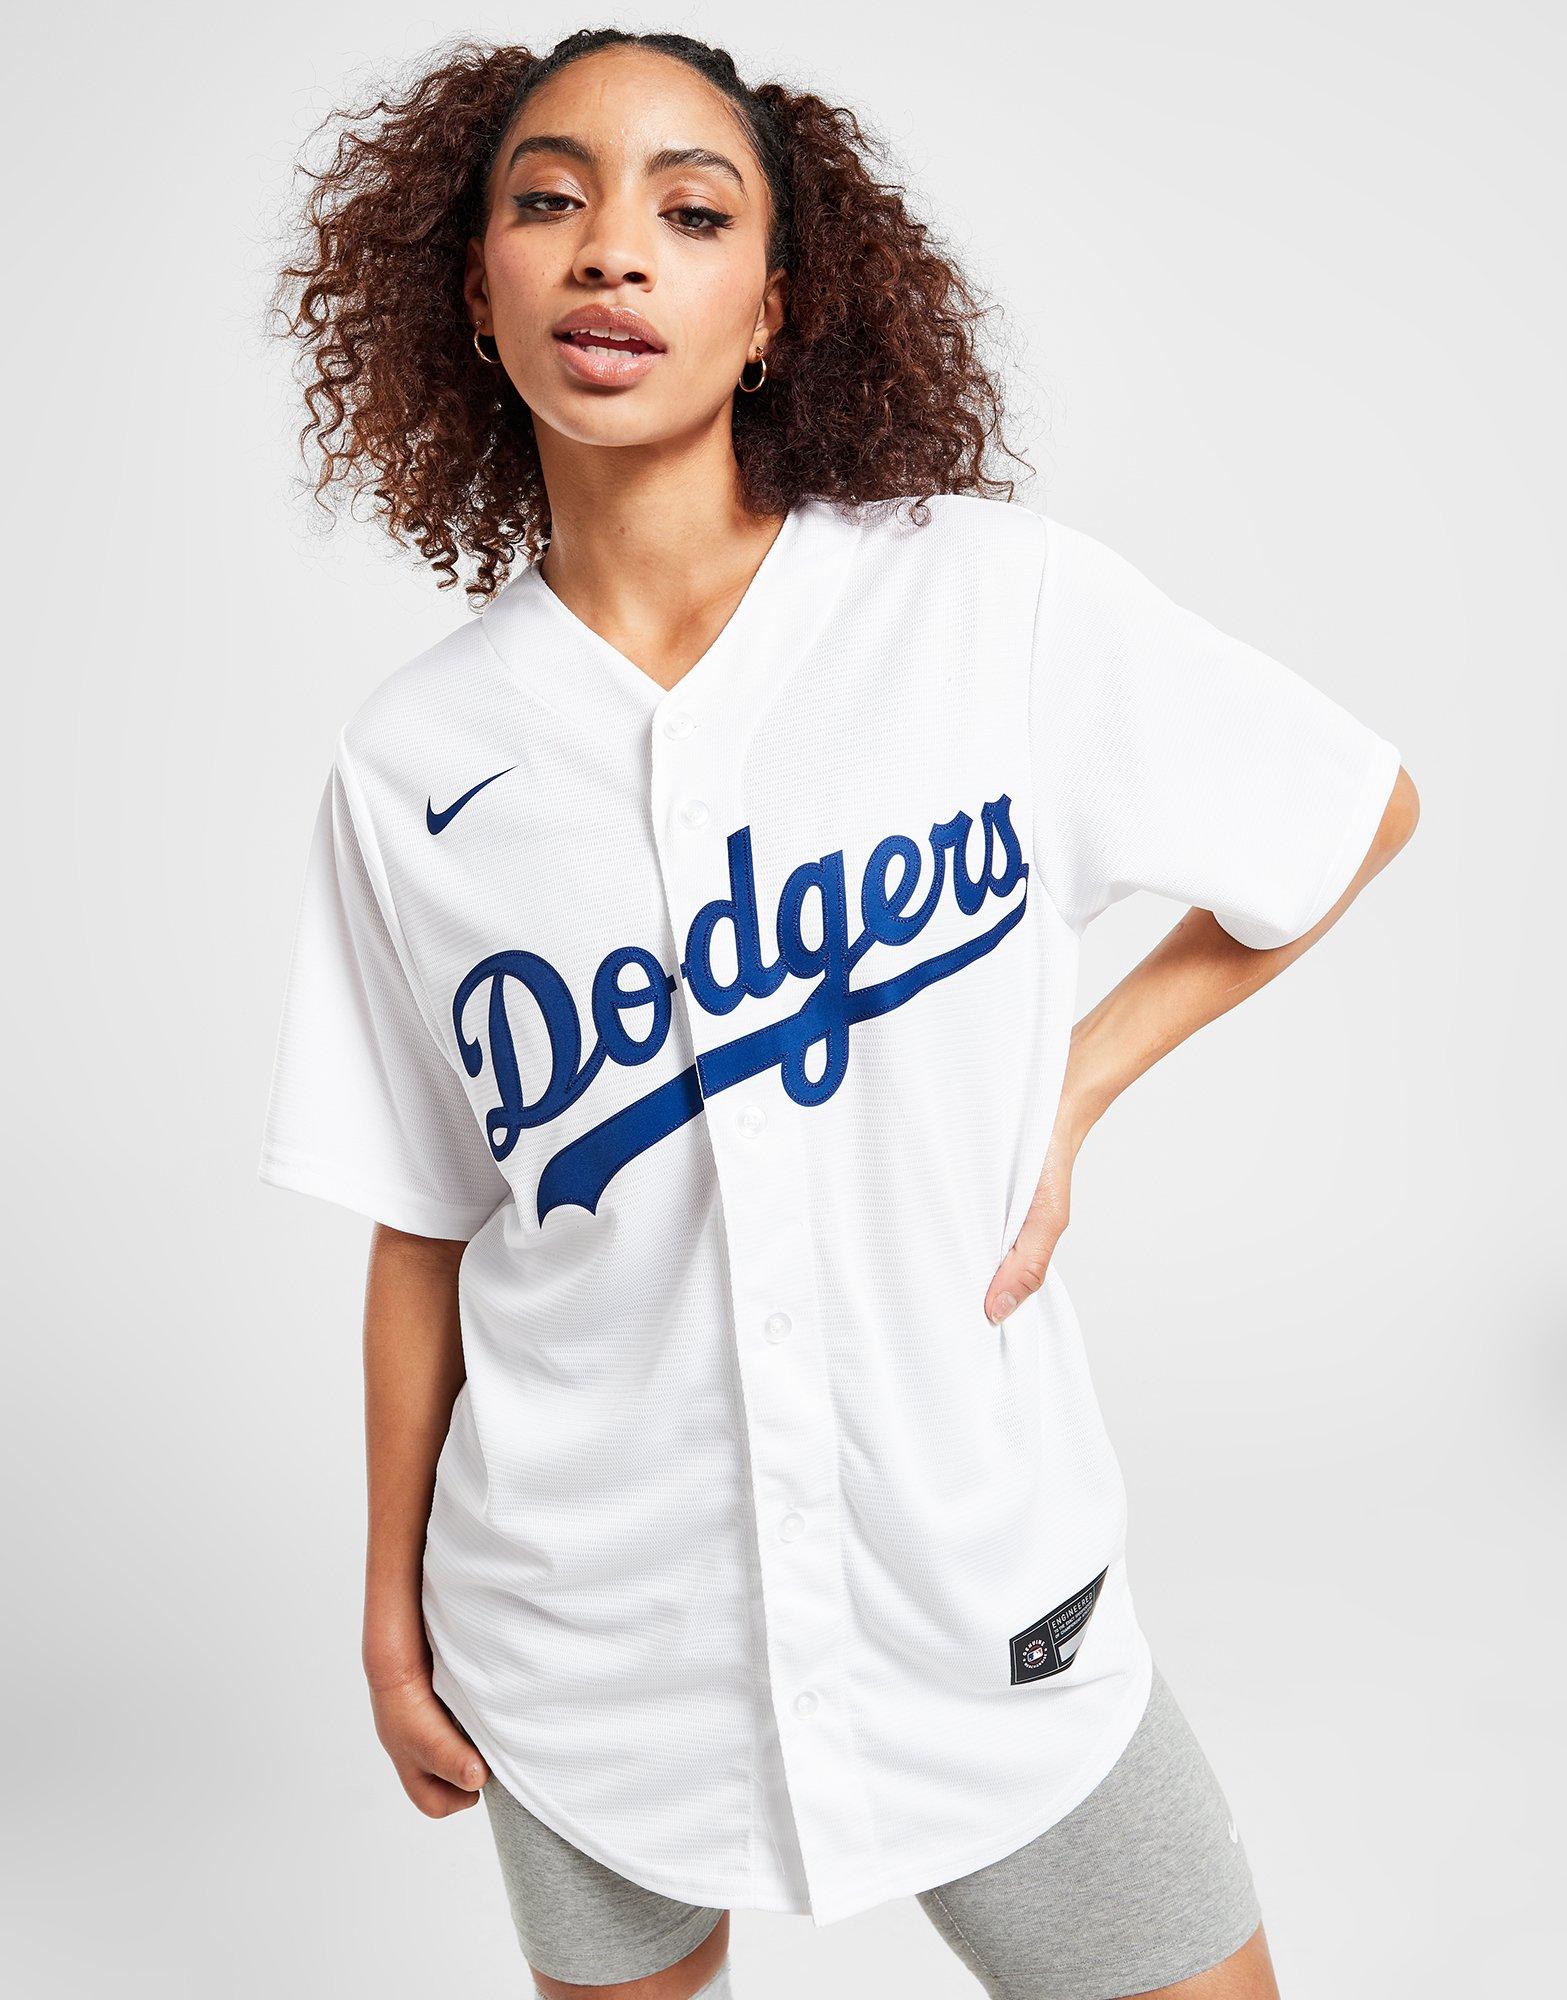 Nike LA Dodgers 2020 World Series Champions White Jersey Size 